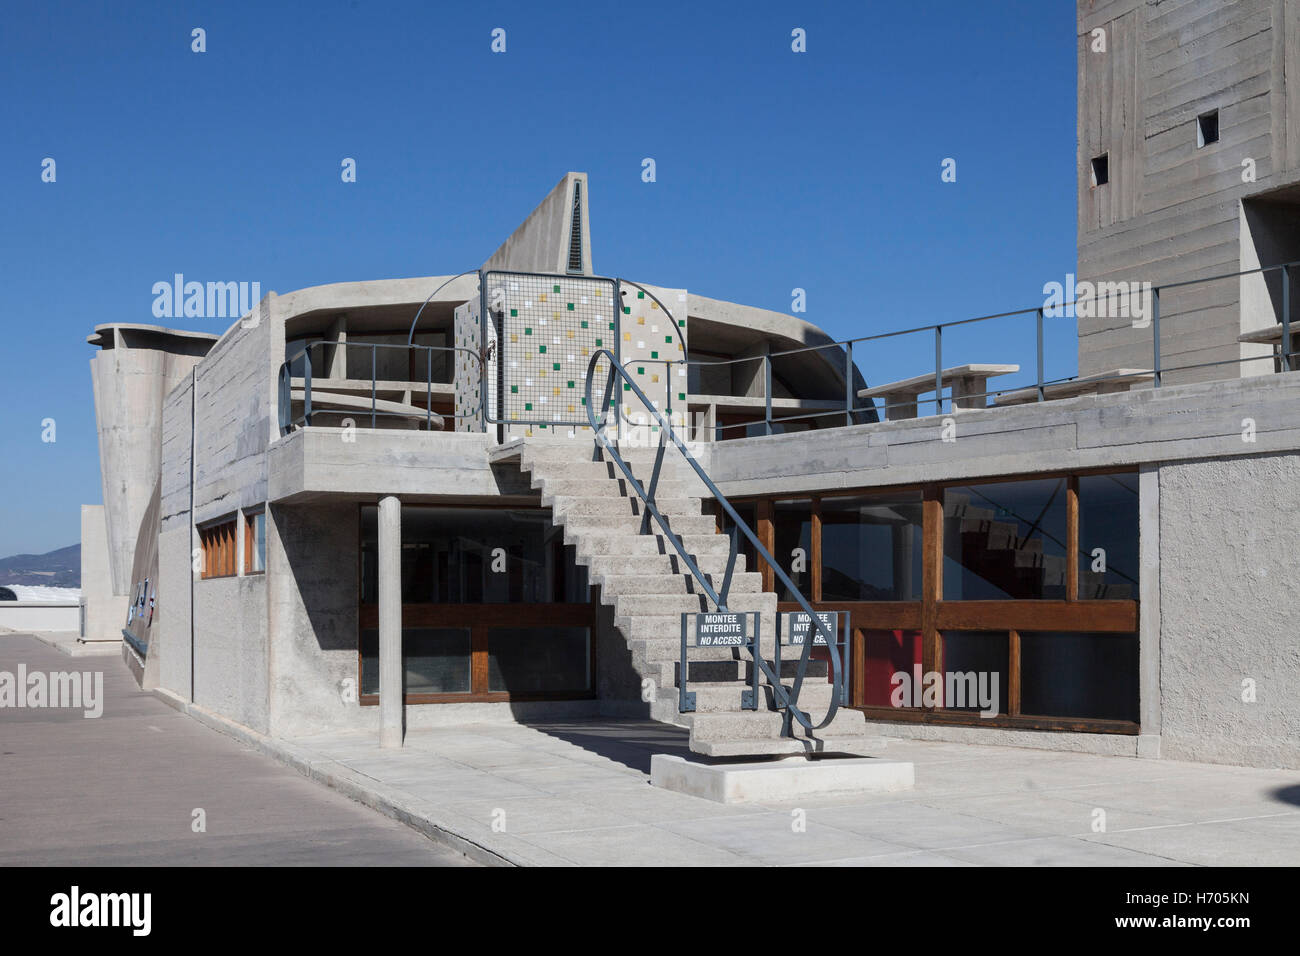 Unite d'habitation, Marseille, France, Architecte : Le Corbusier, 1952 Banque D'Images